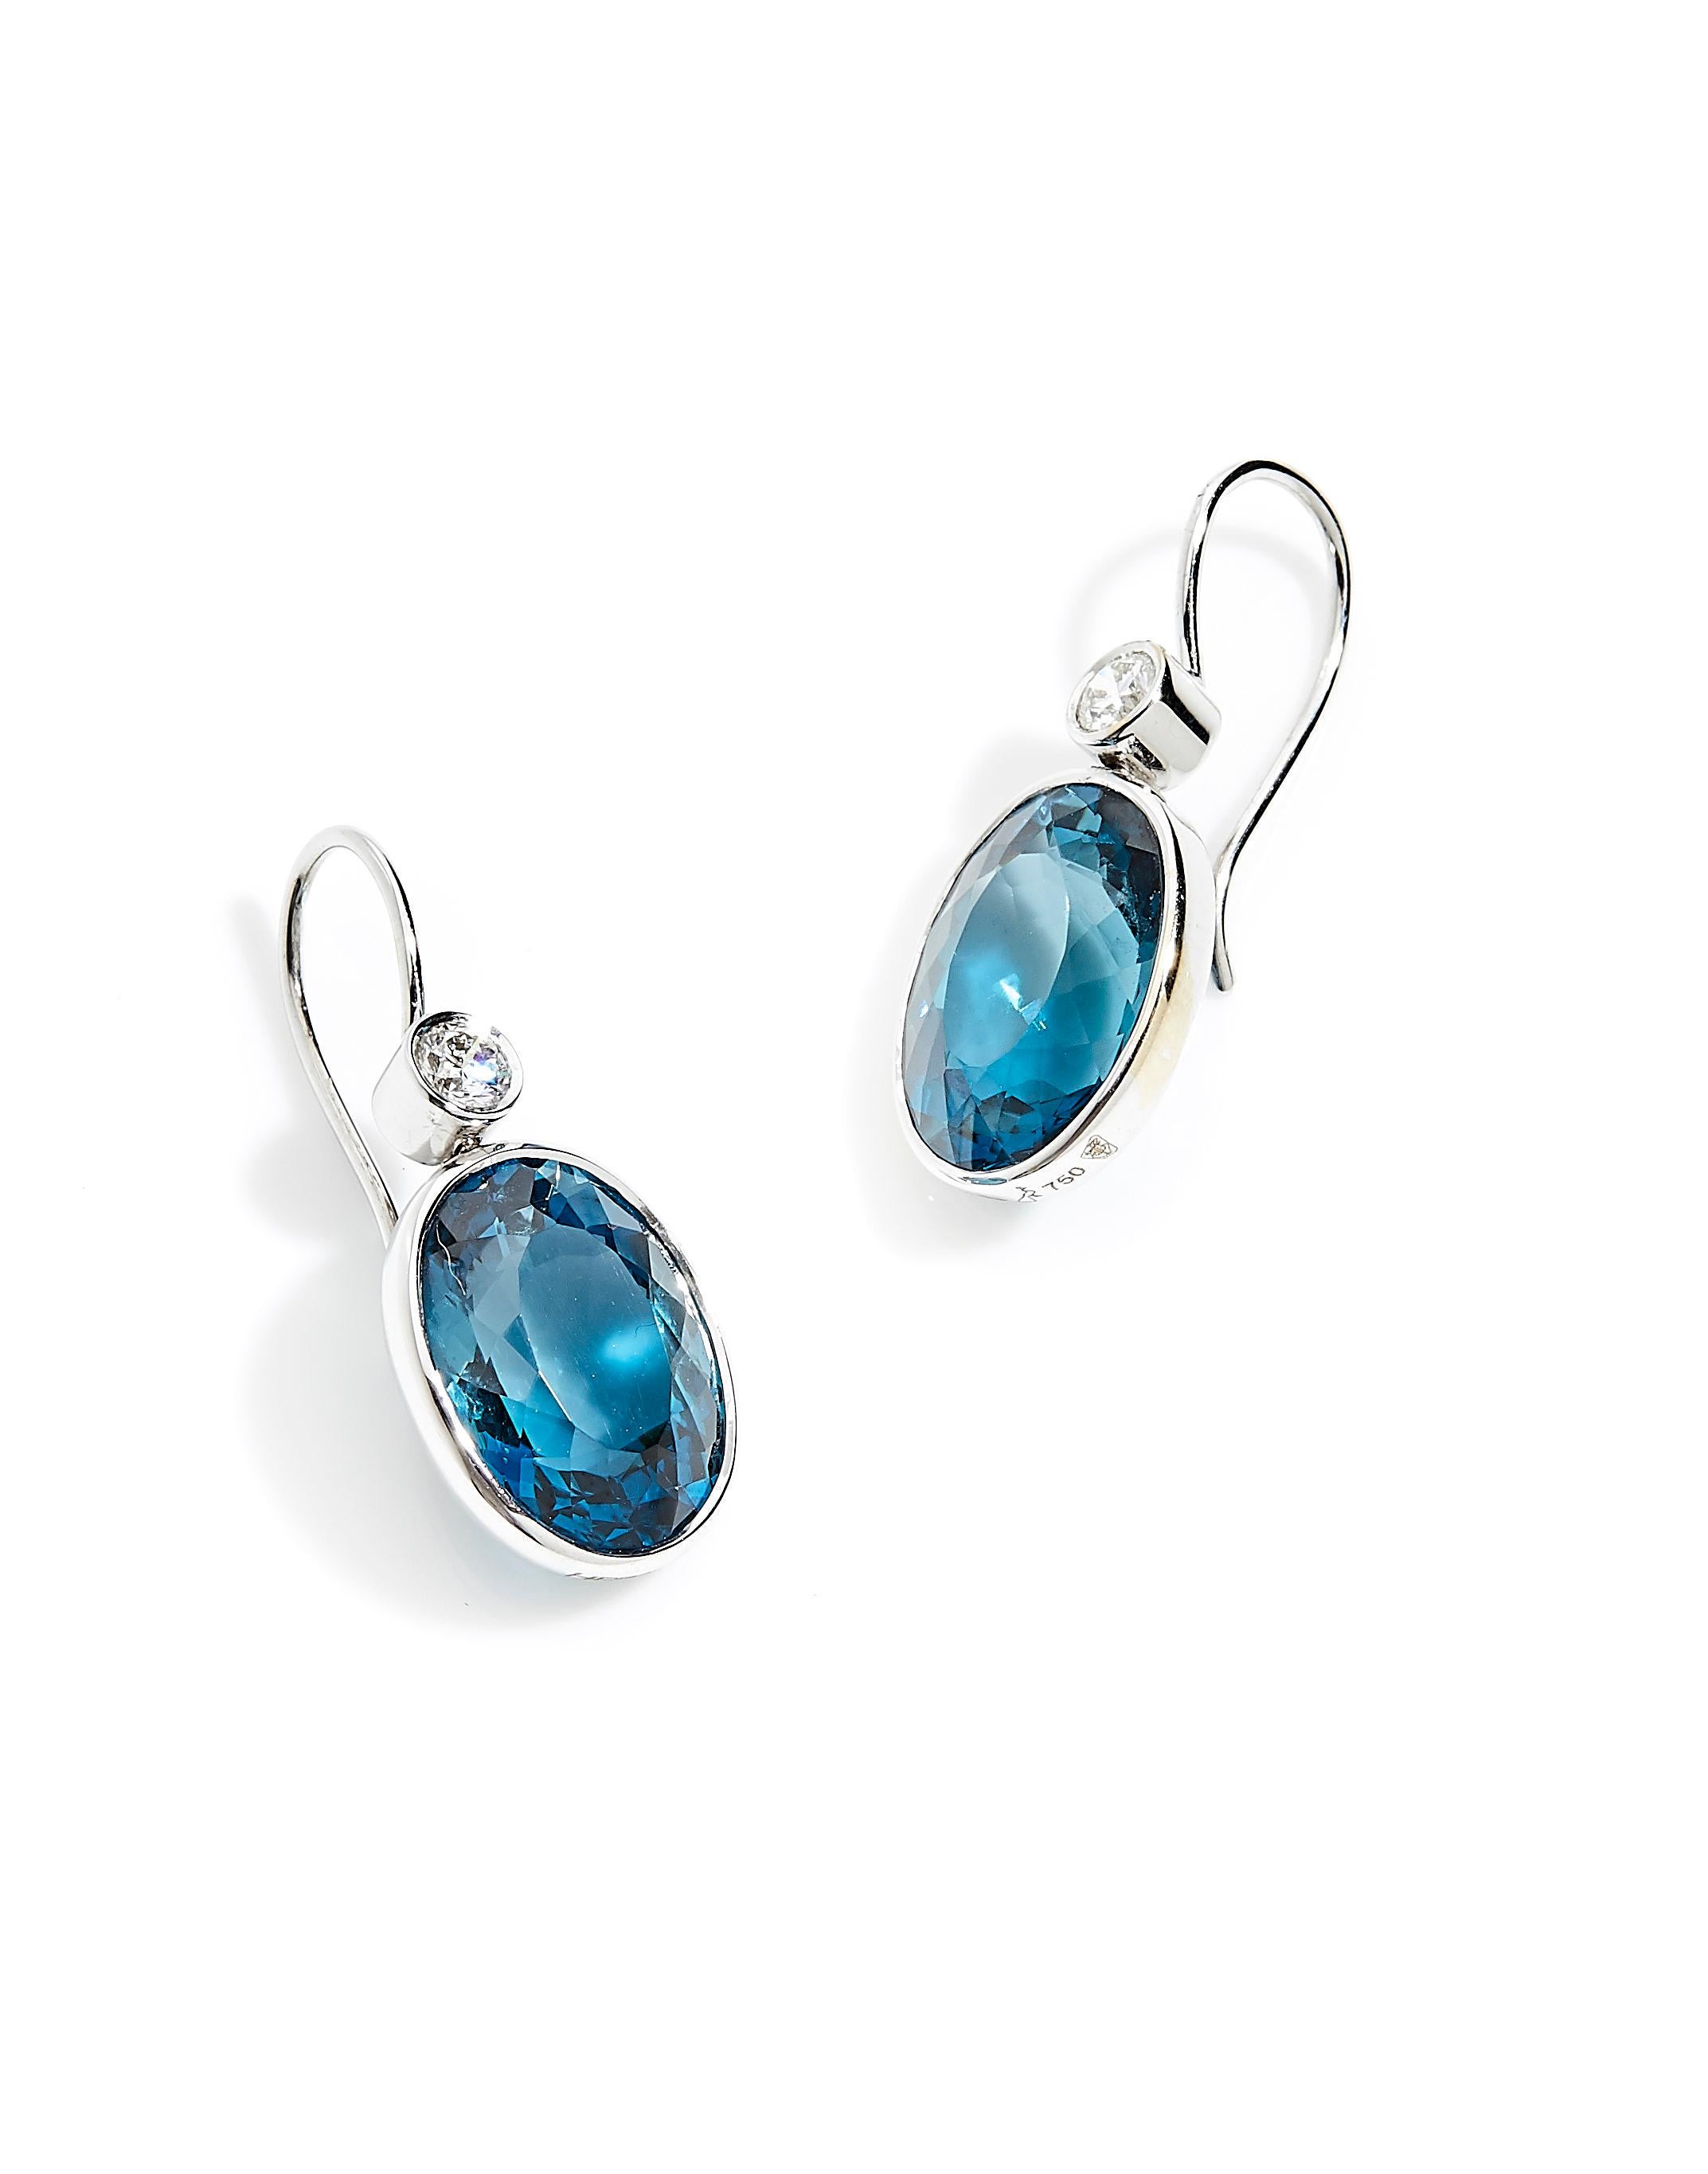 blue topaz dangle earrings